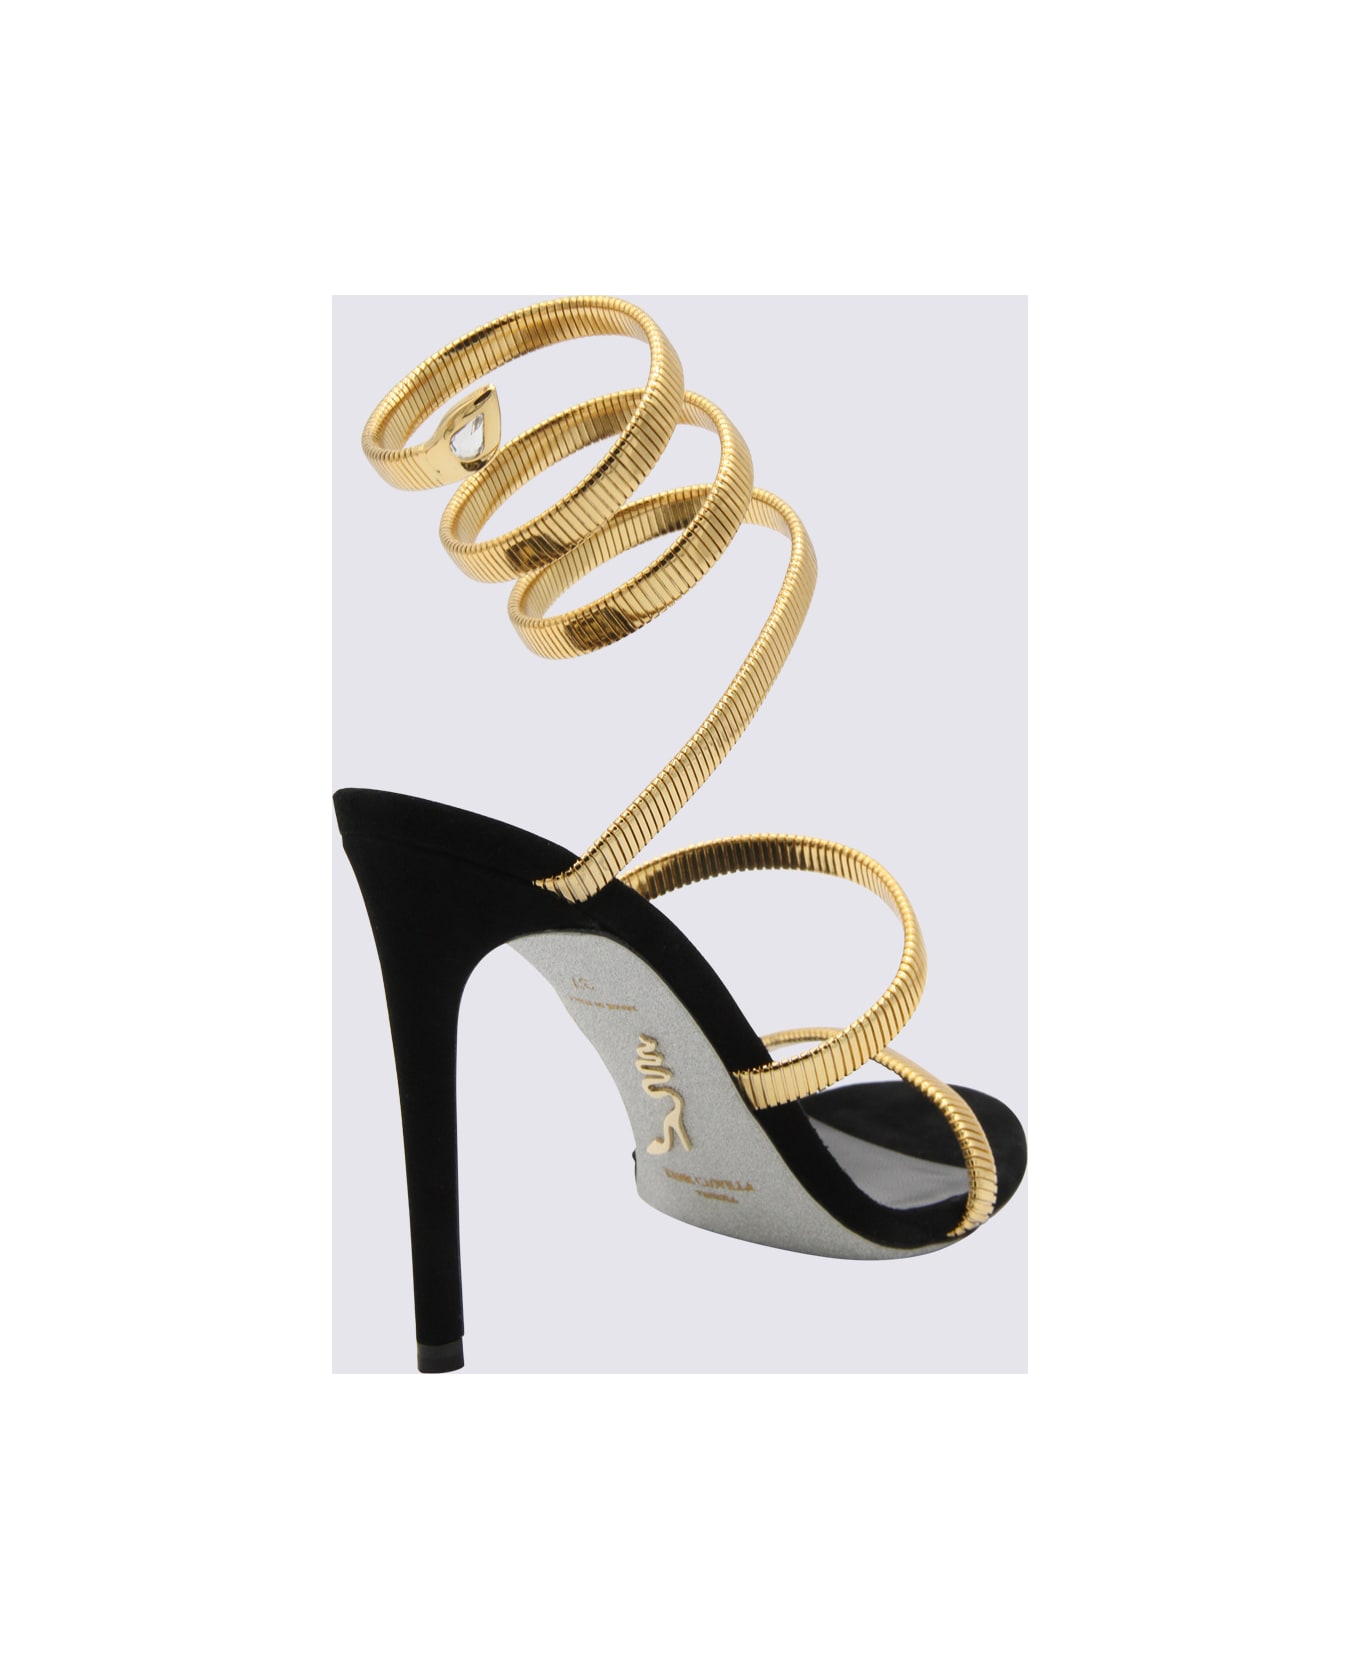 René Caovilla Black And Gold Juniper Sandals - Black